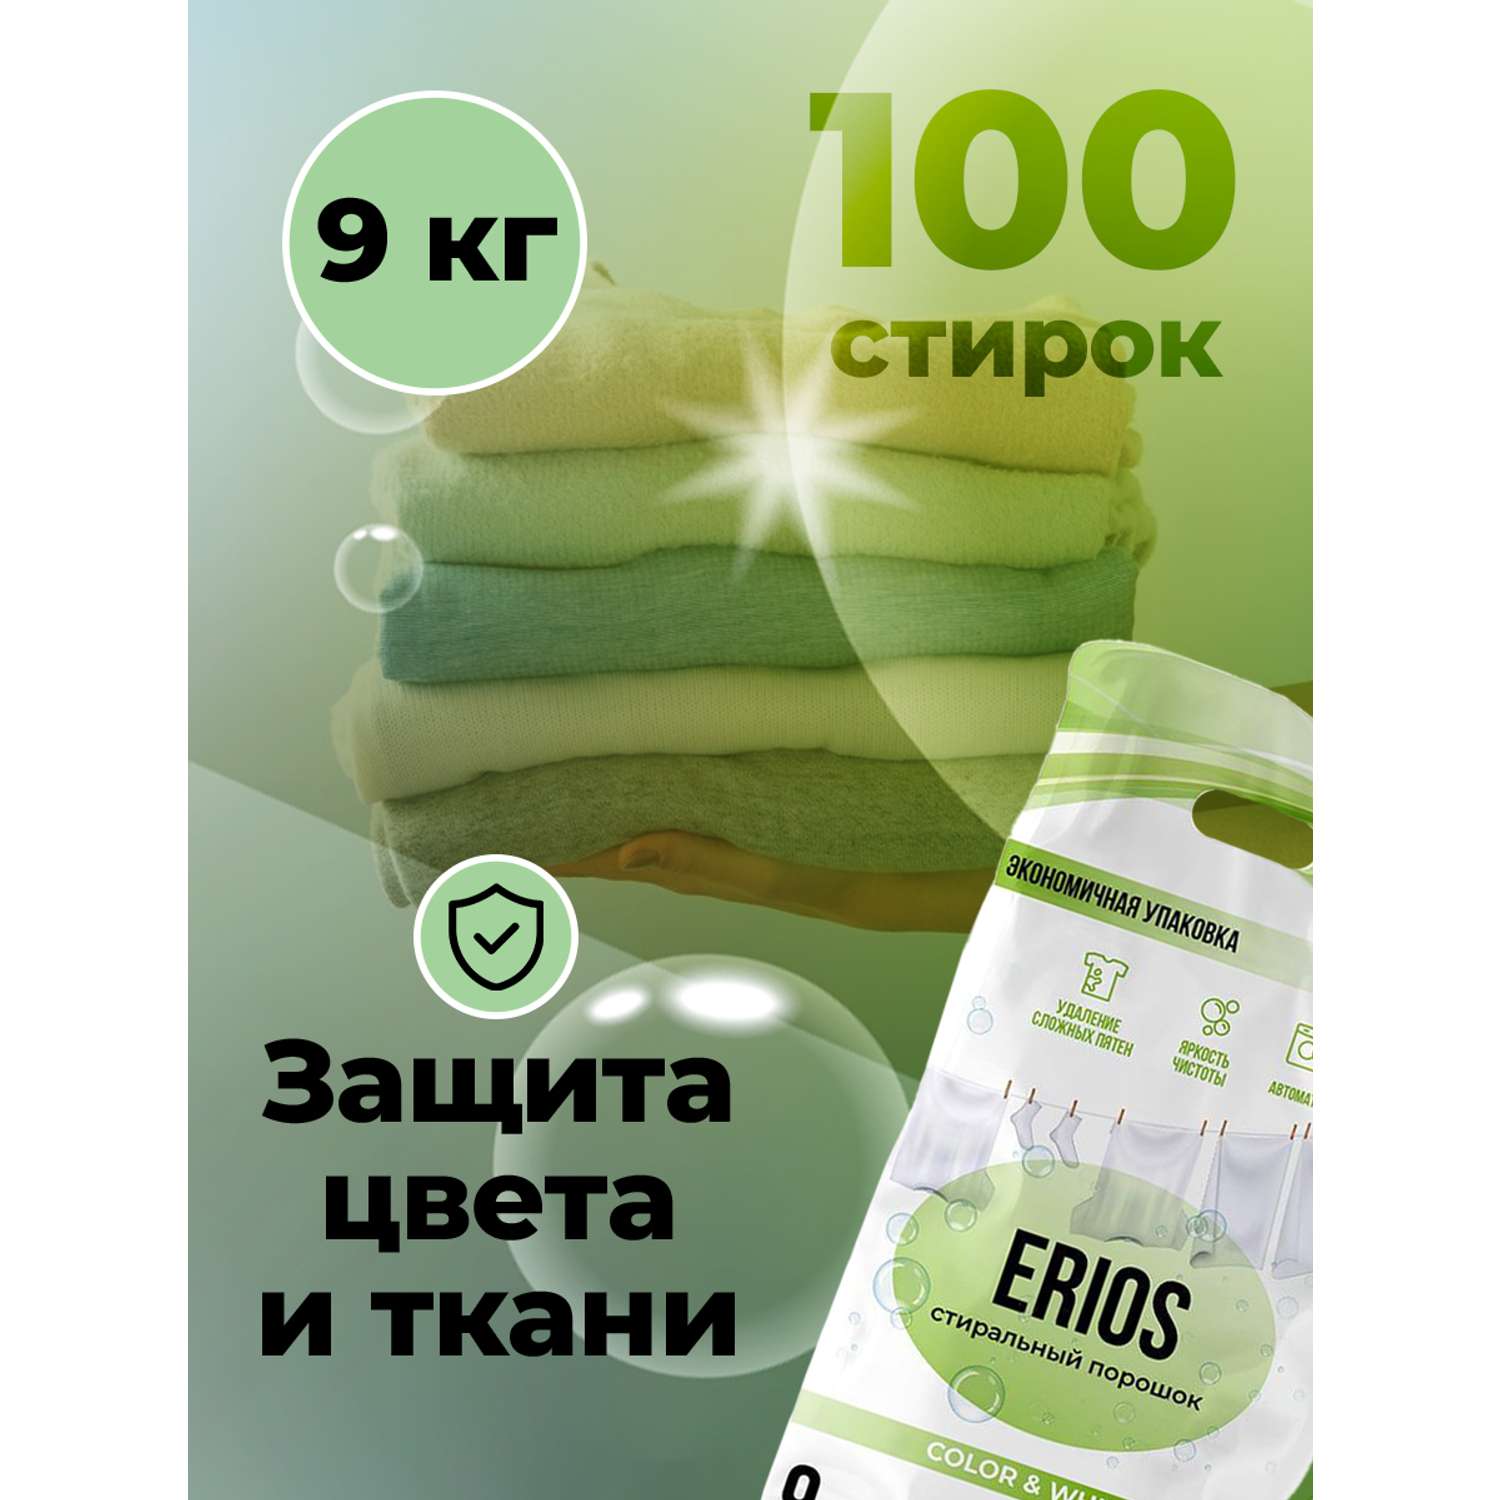 Стиральный порошок ERIOS Универсальный гипоаллергенный для цветного белого белья чувствительной кожи упаковка 9 кг - фото 3